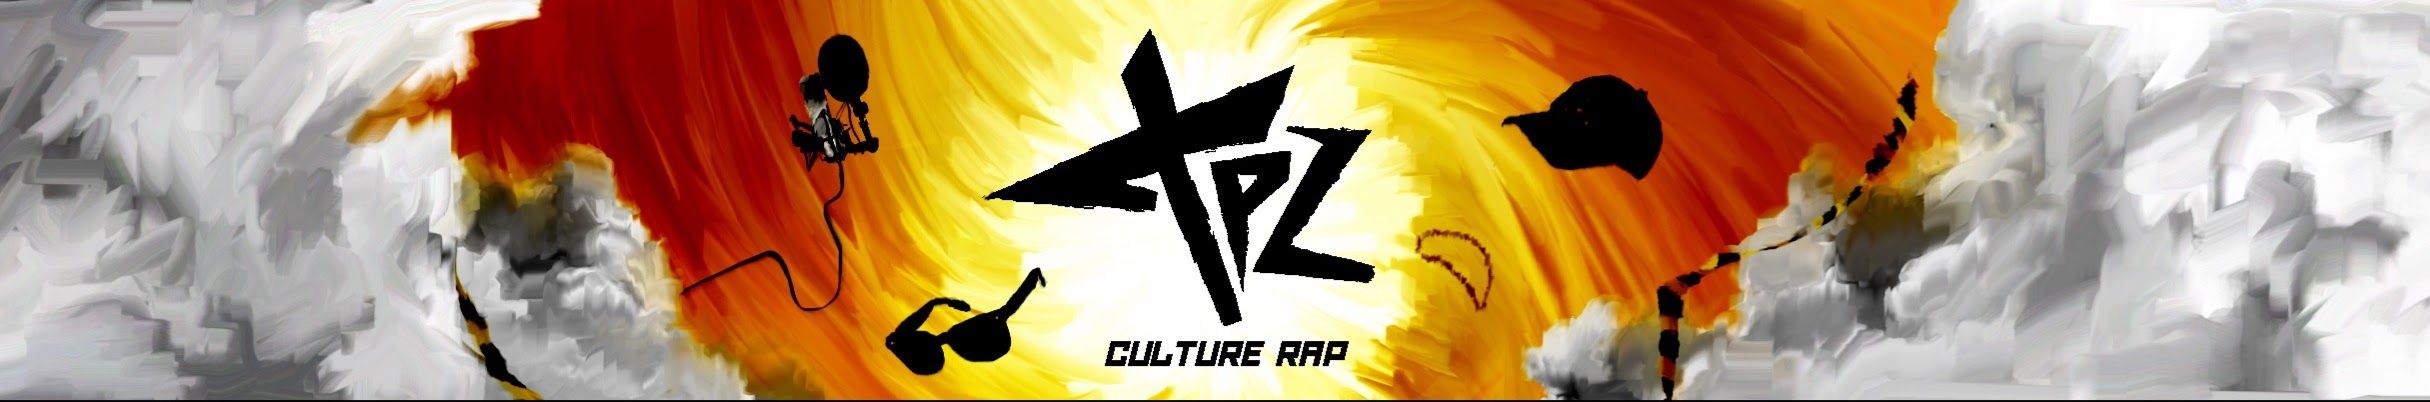 TPZ : le curieux de la culture RAP